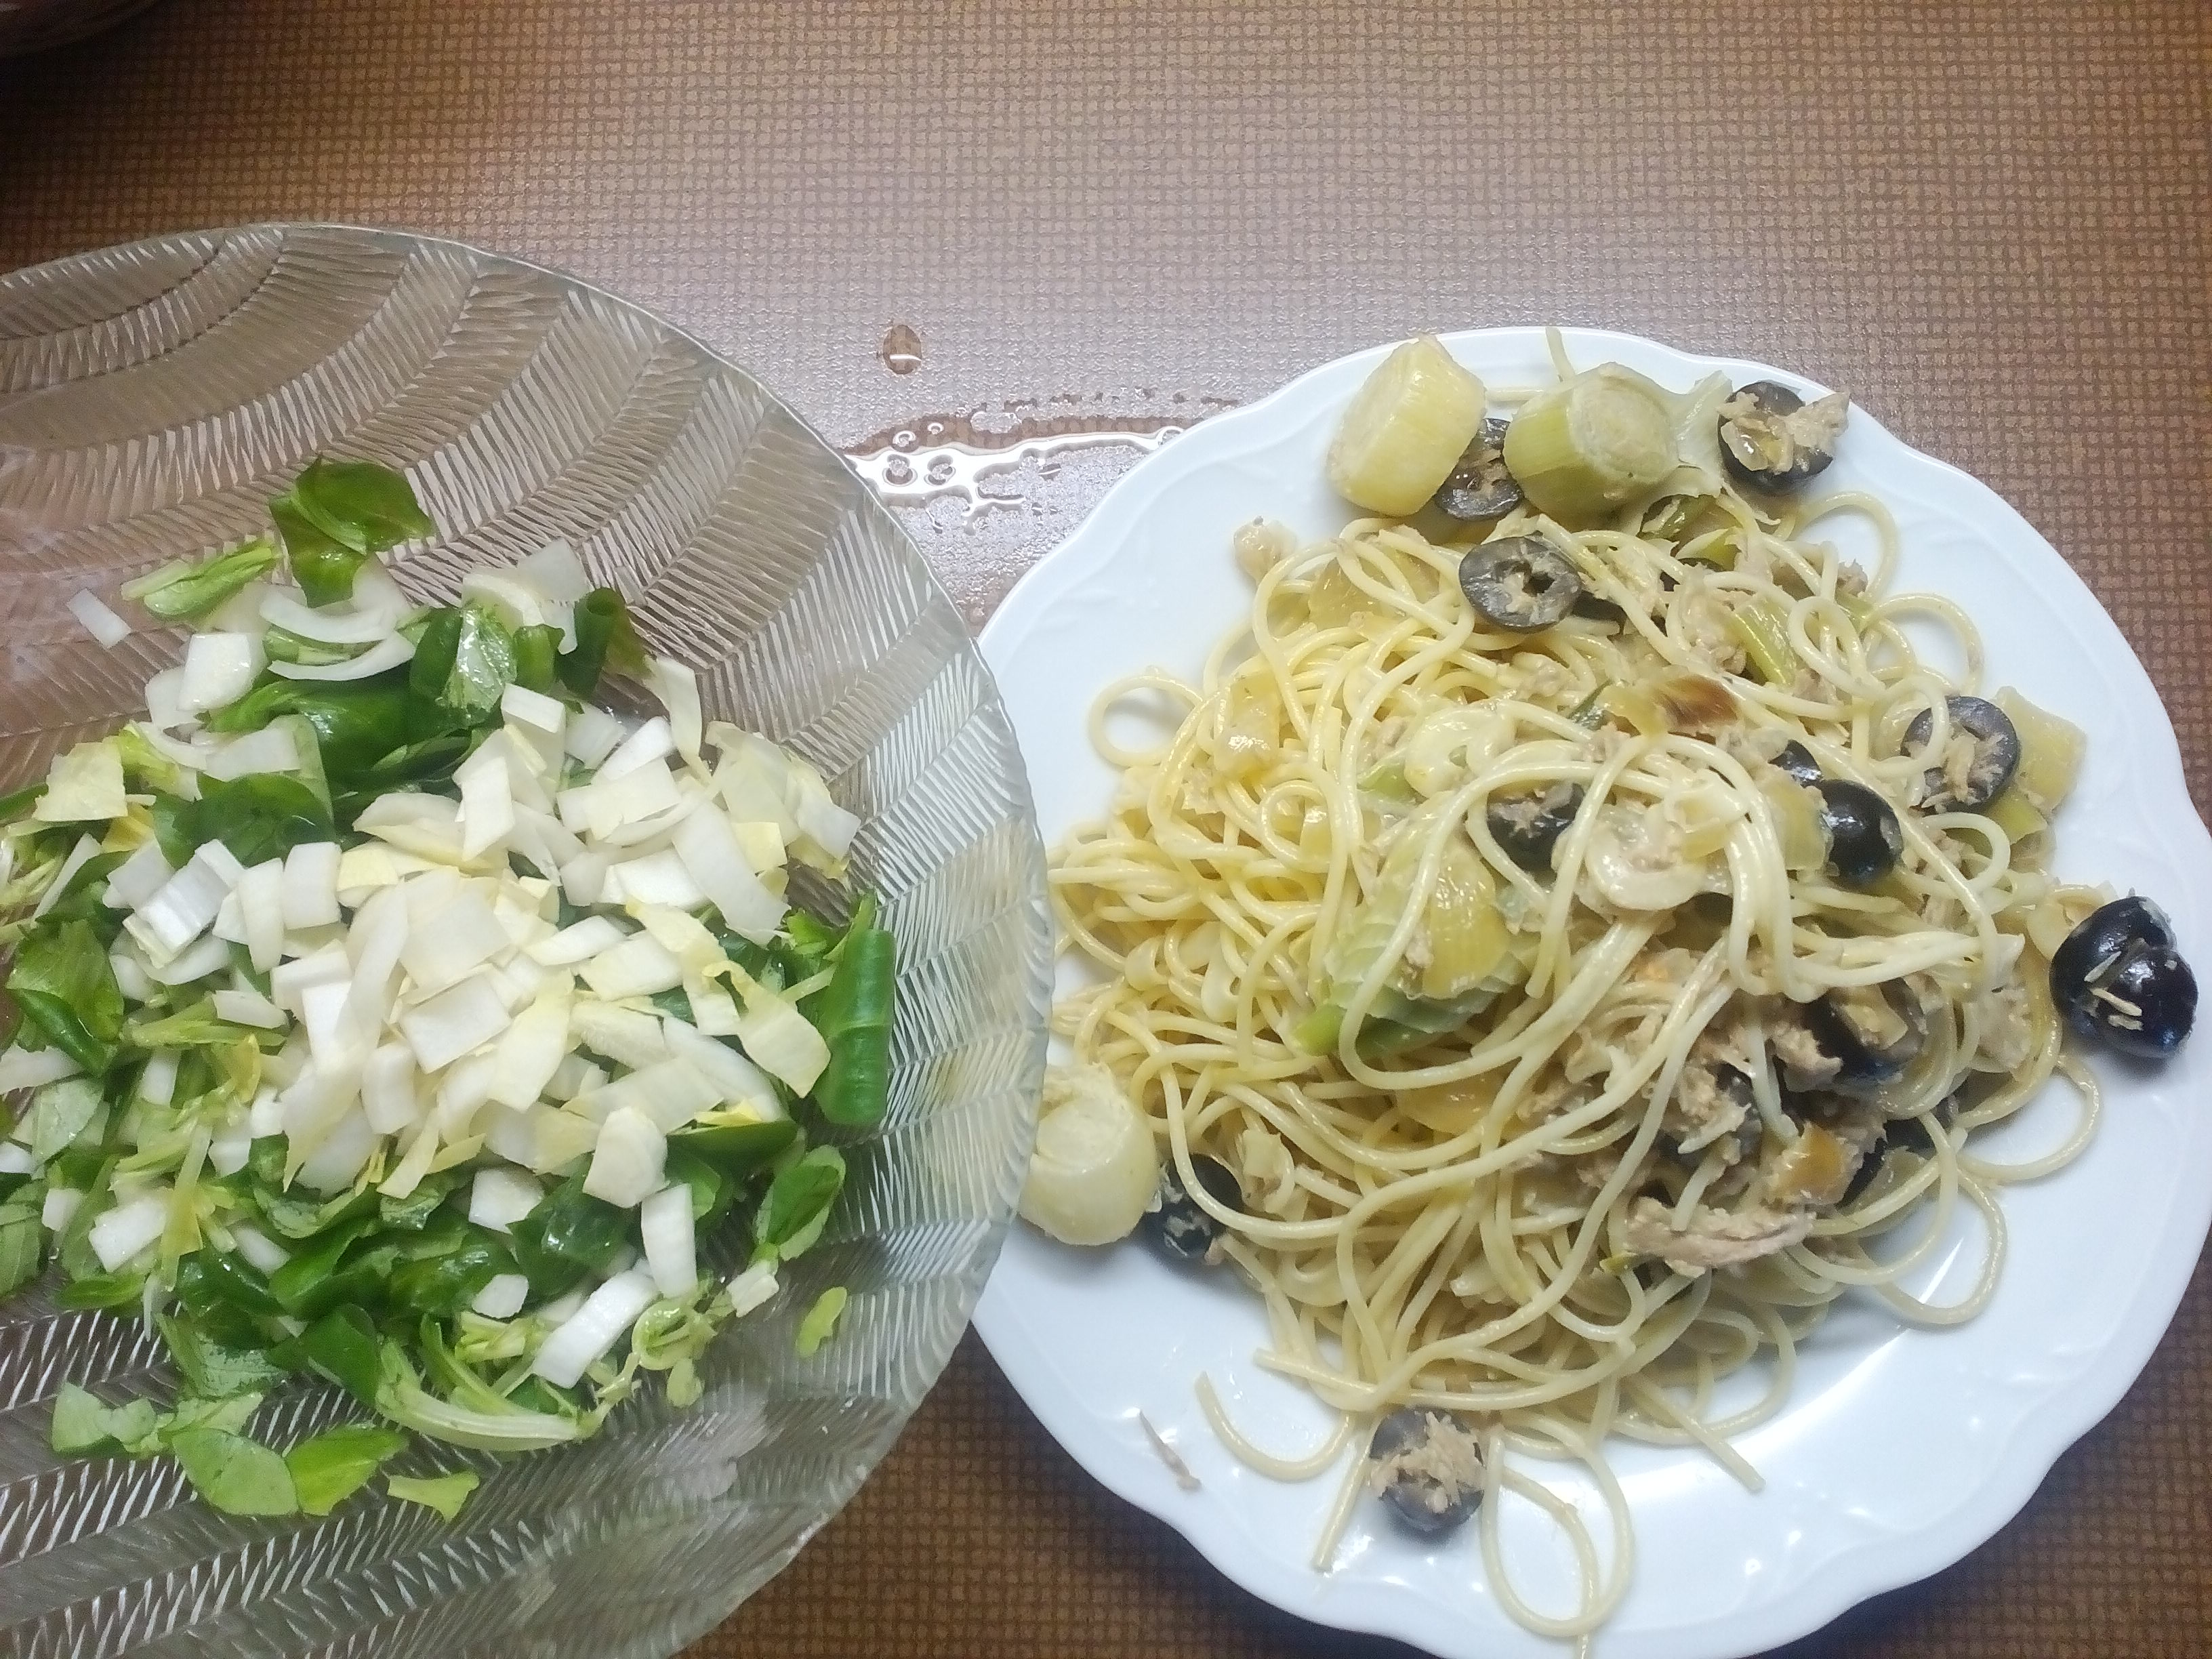 špagety,pórek a olivy, parmazán + salát z čekanky a polníčku 